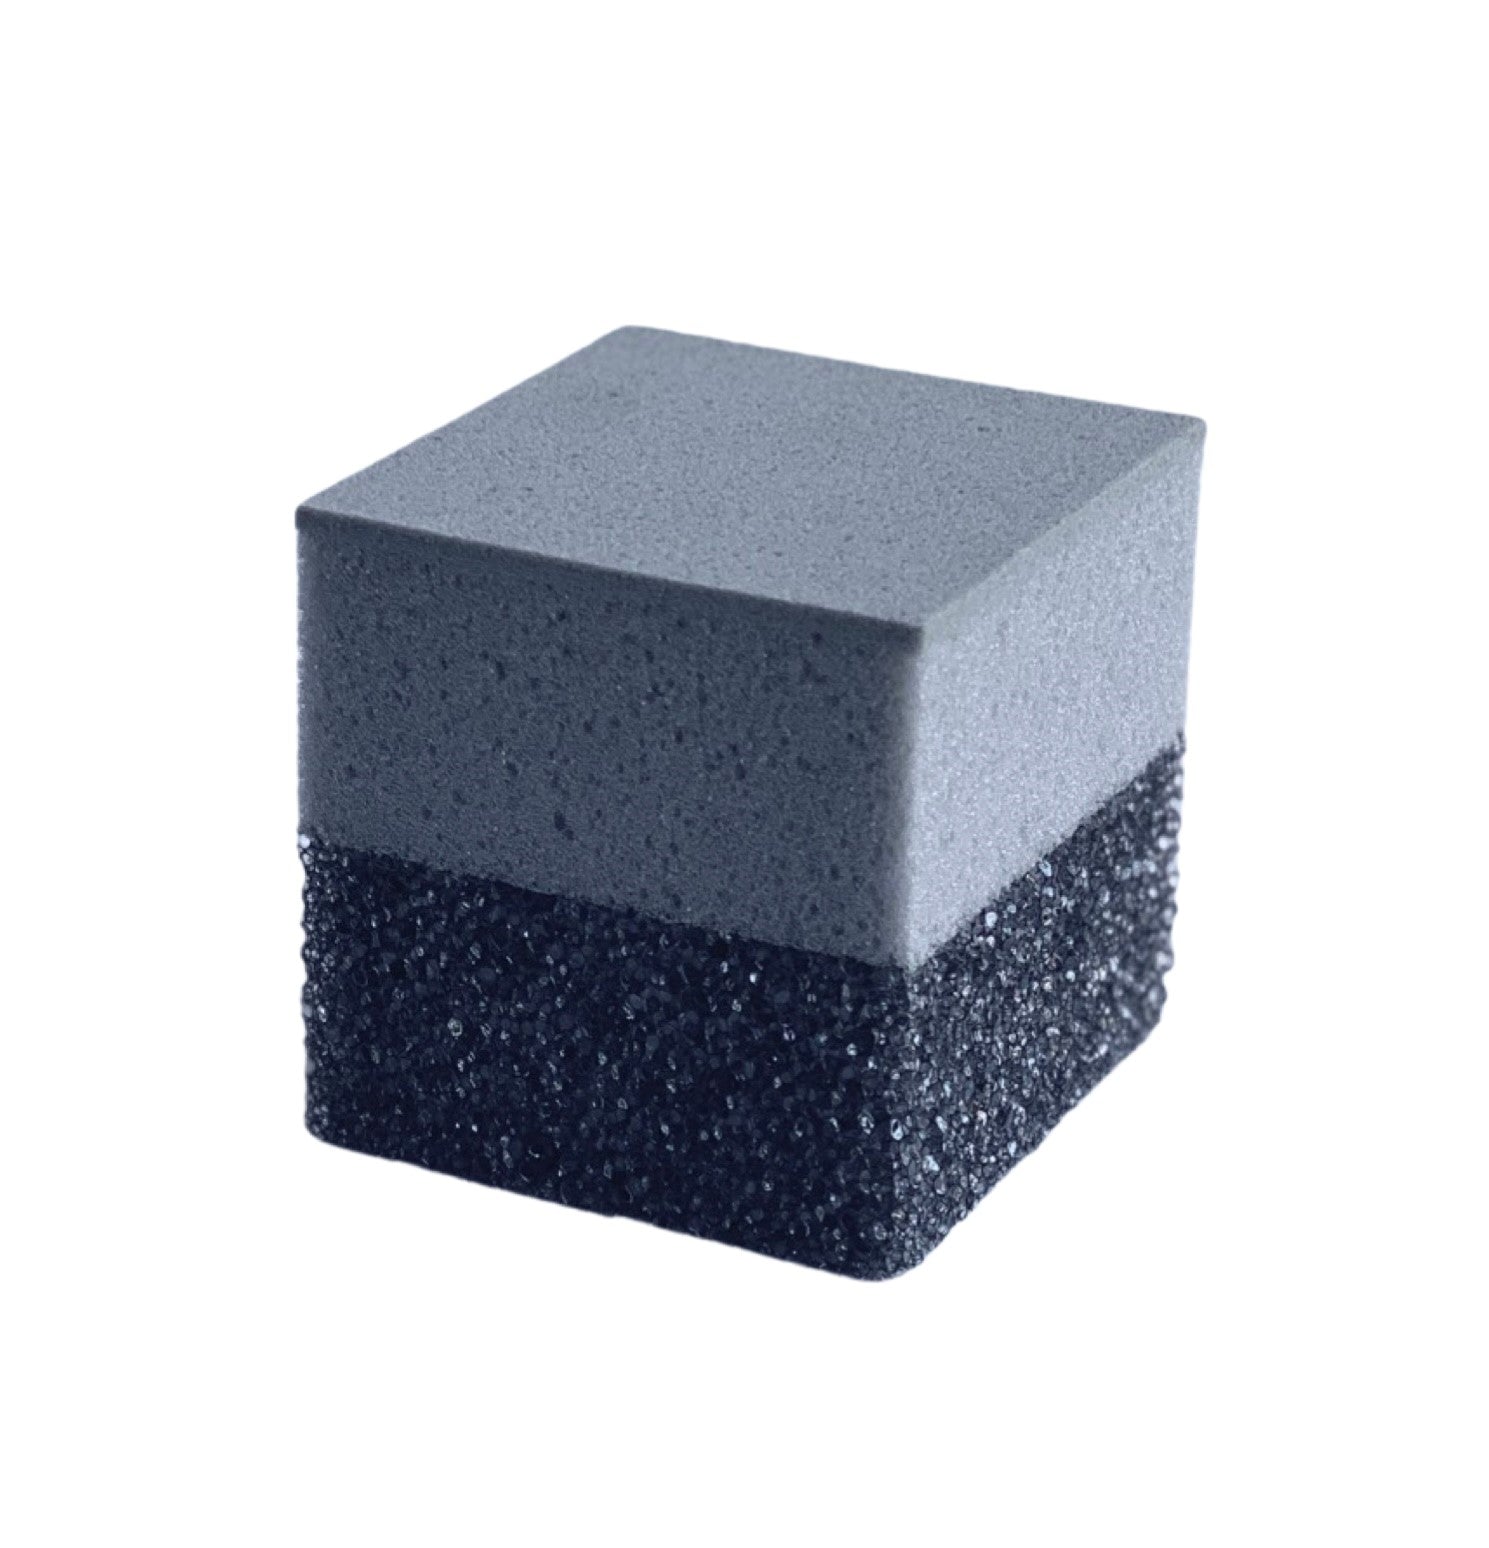 Charcoal Gray Scrub + Wipe Cube